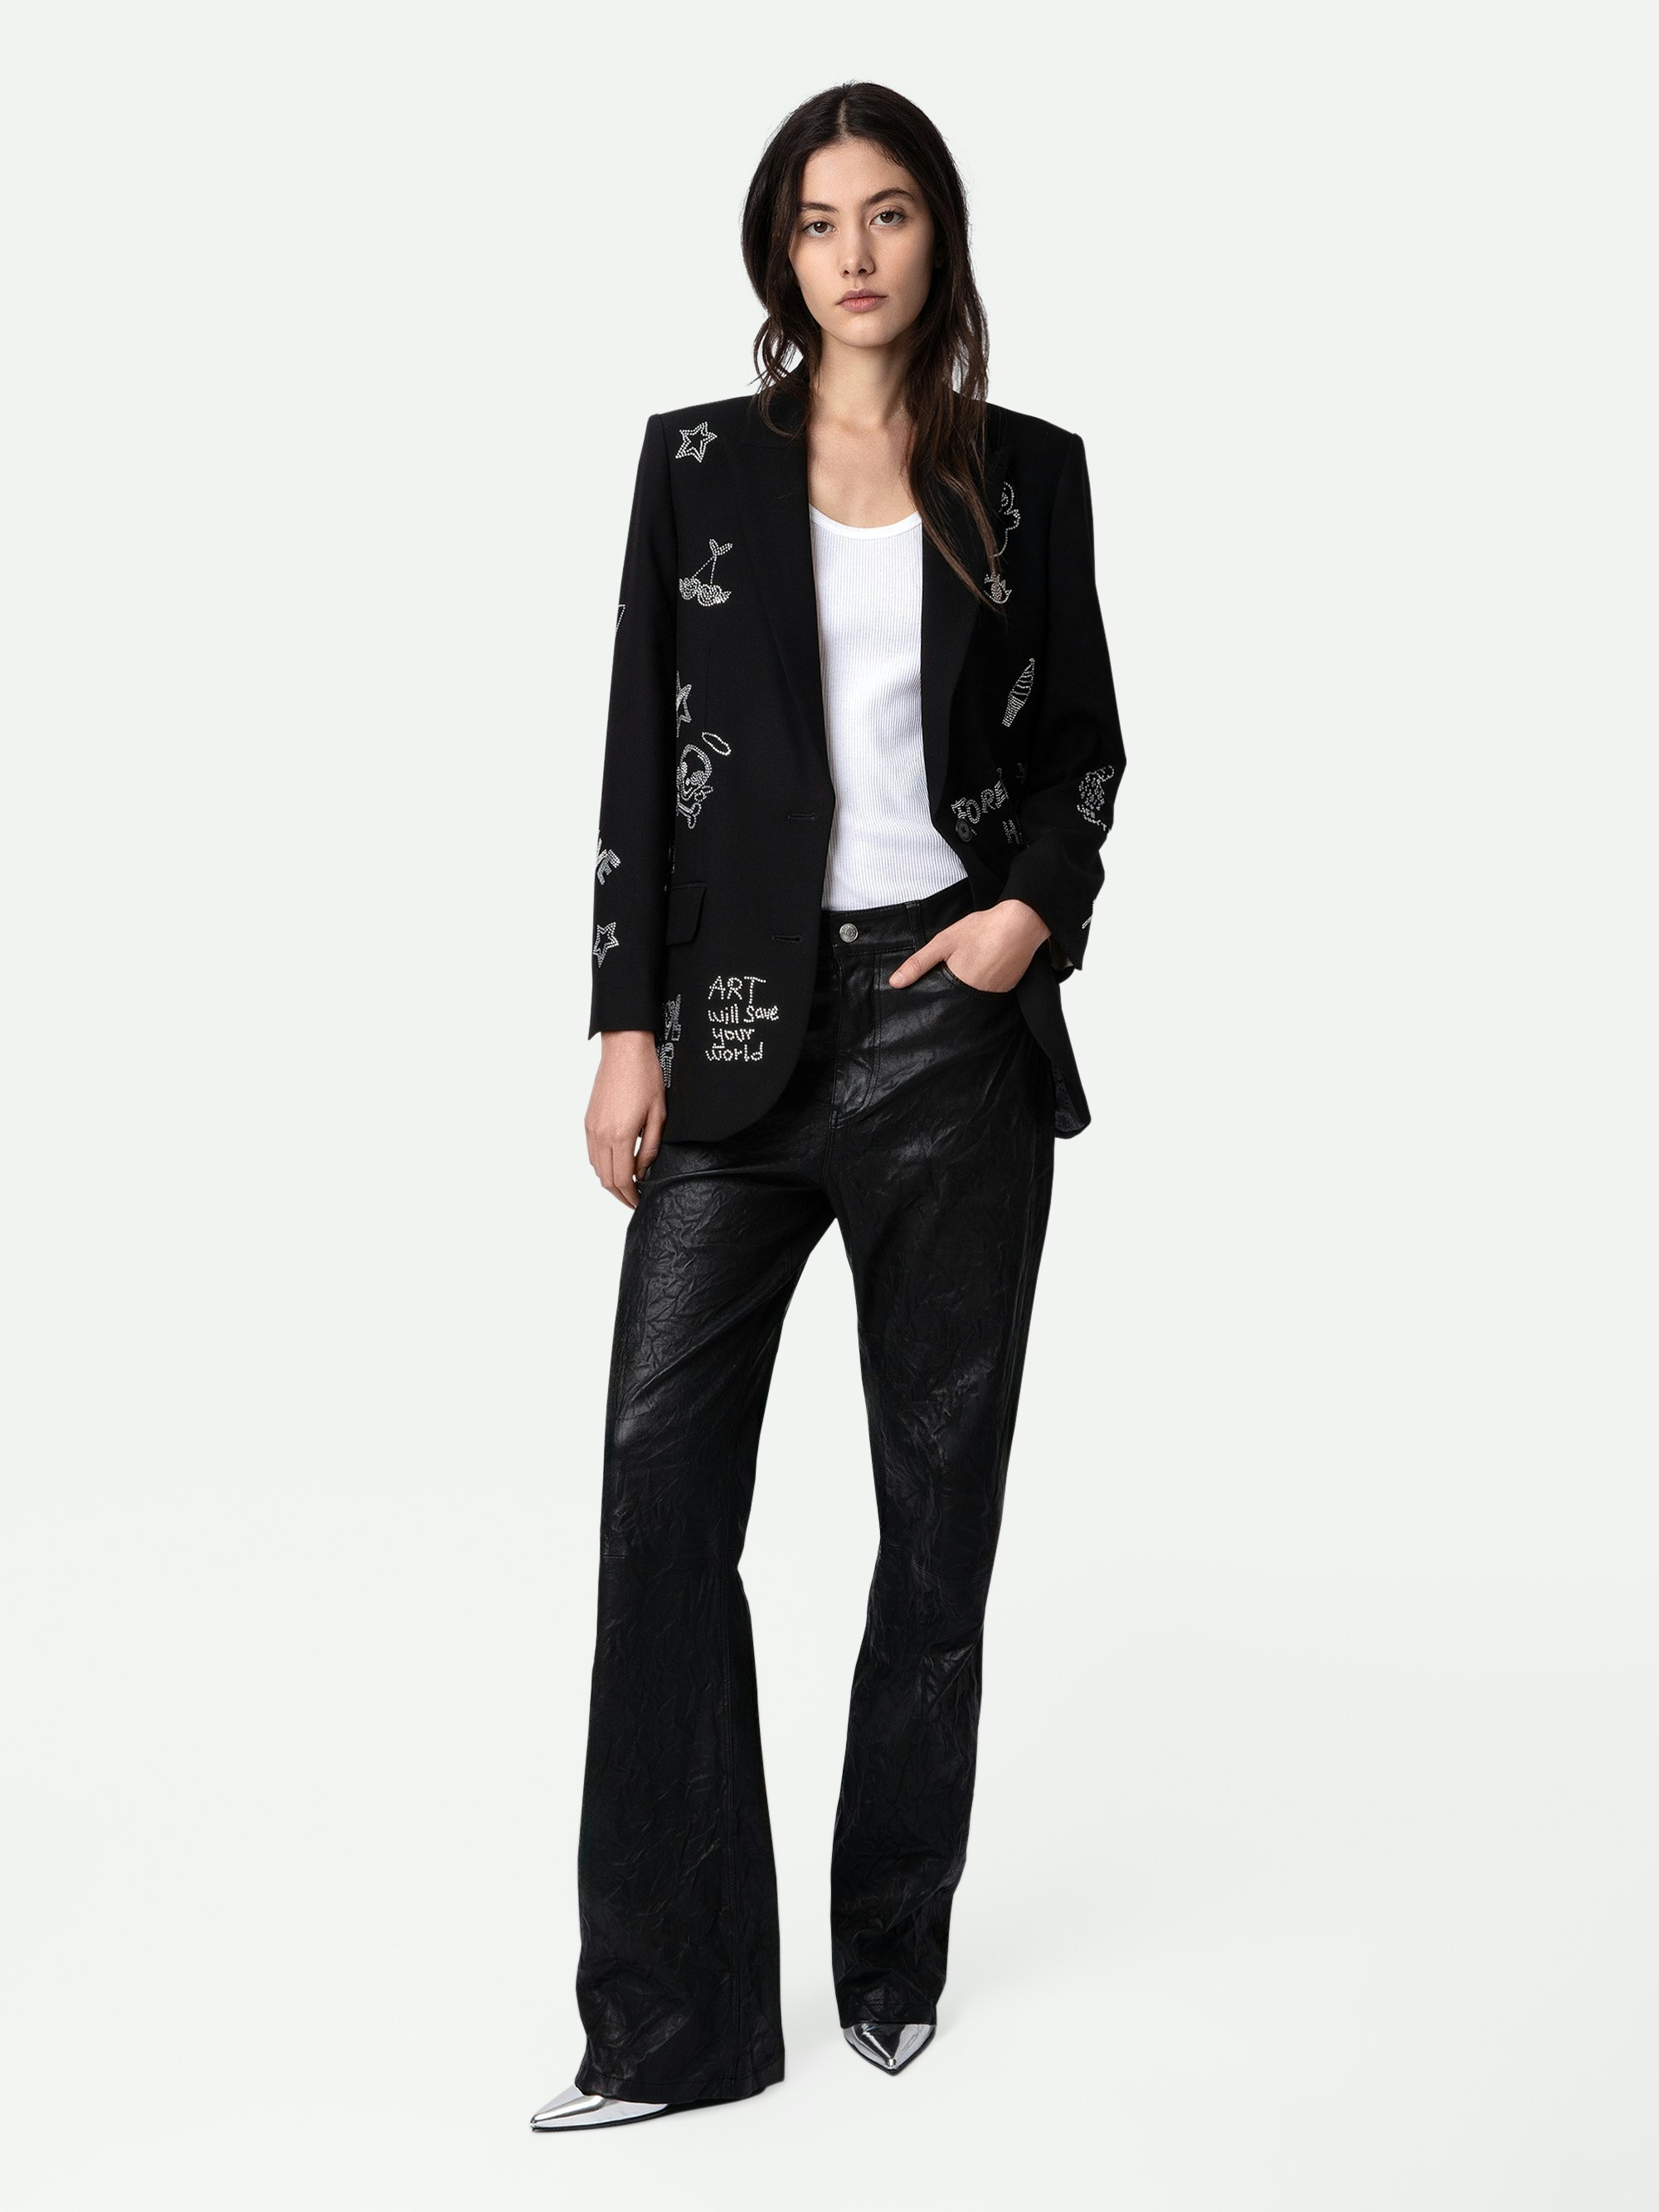 Blazer Viva Strass - Veste blazer noire à fermeture boutonnée, poches et customisations en strass créées par Humberto Cruz.